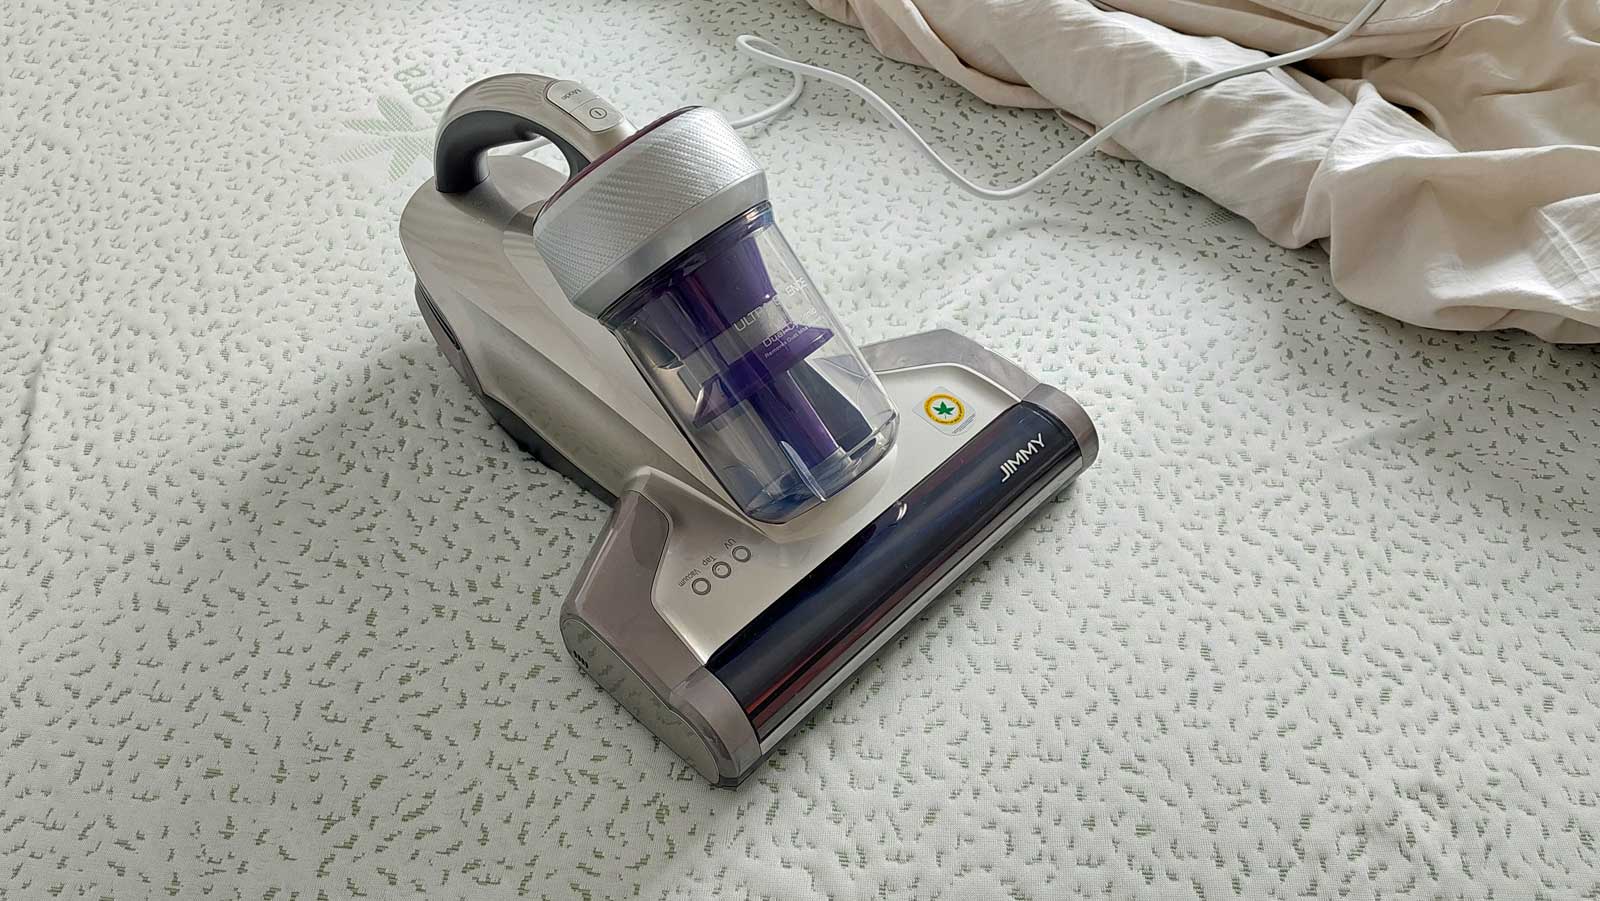 Power Clean UV aspiramaterassi ad azione combinata con raggi ultravioletti aspira e sterilizza il letto materassi divani cuscini senza sacco con filtro HEPA aspira materassi aspiramaterasso ACB-132 